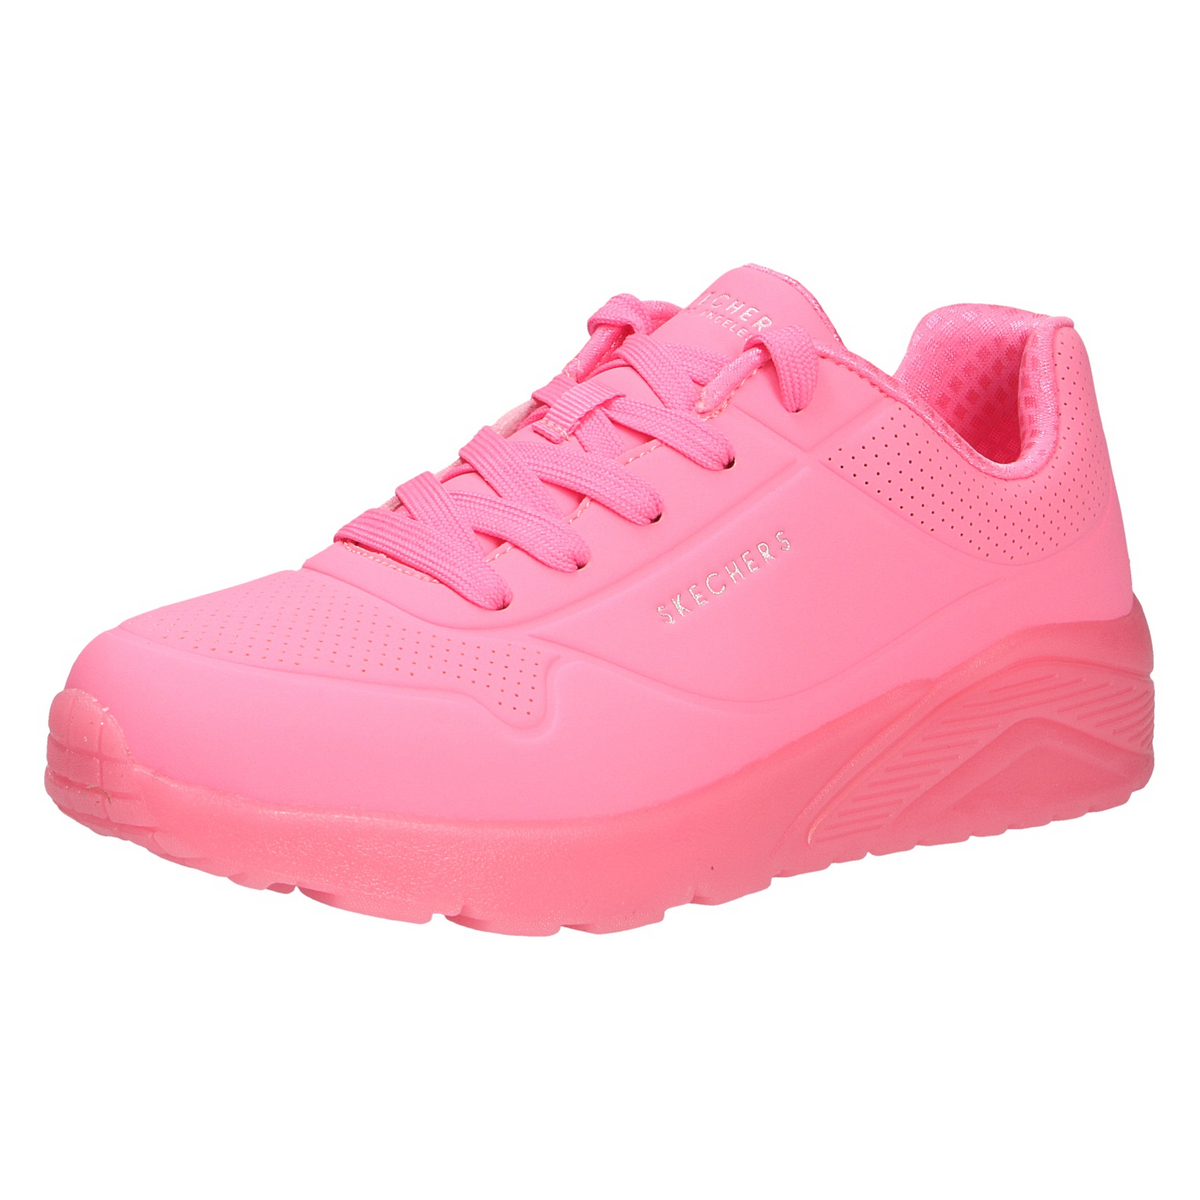 низкие кроссовки superfit halbschuh цвет rosa pink Низкие кроссовки Skechers Halbschuh, цвет rosa/pink